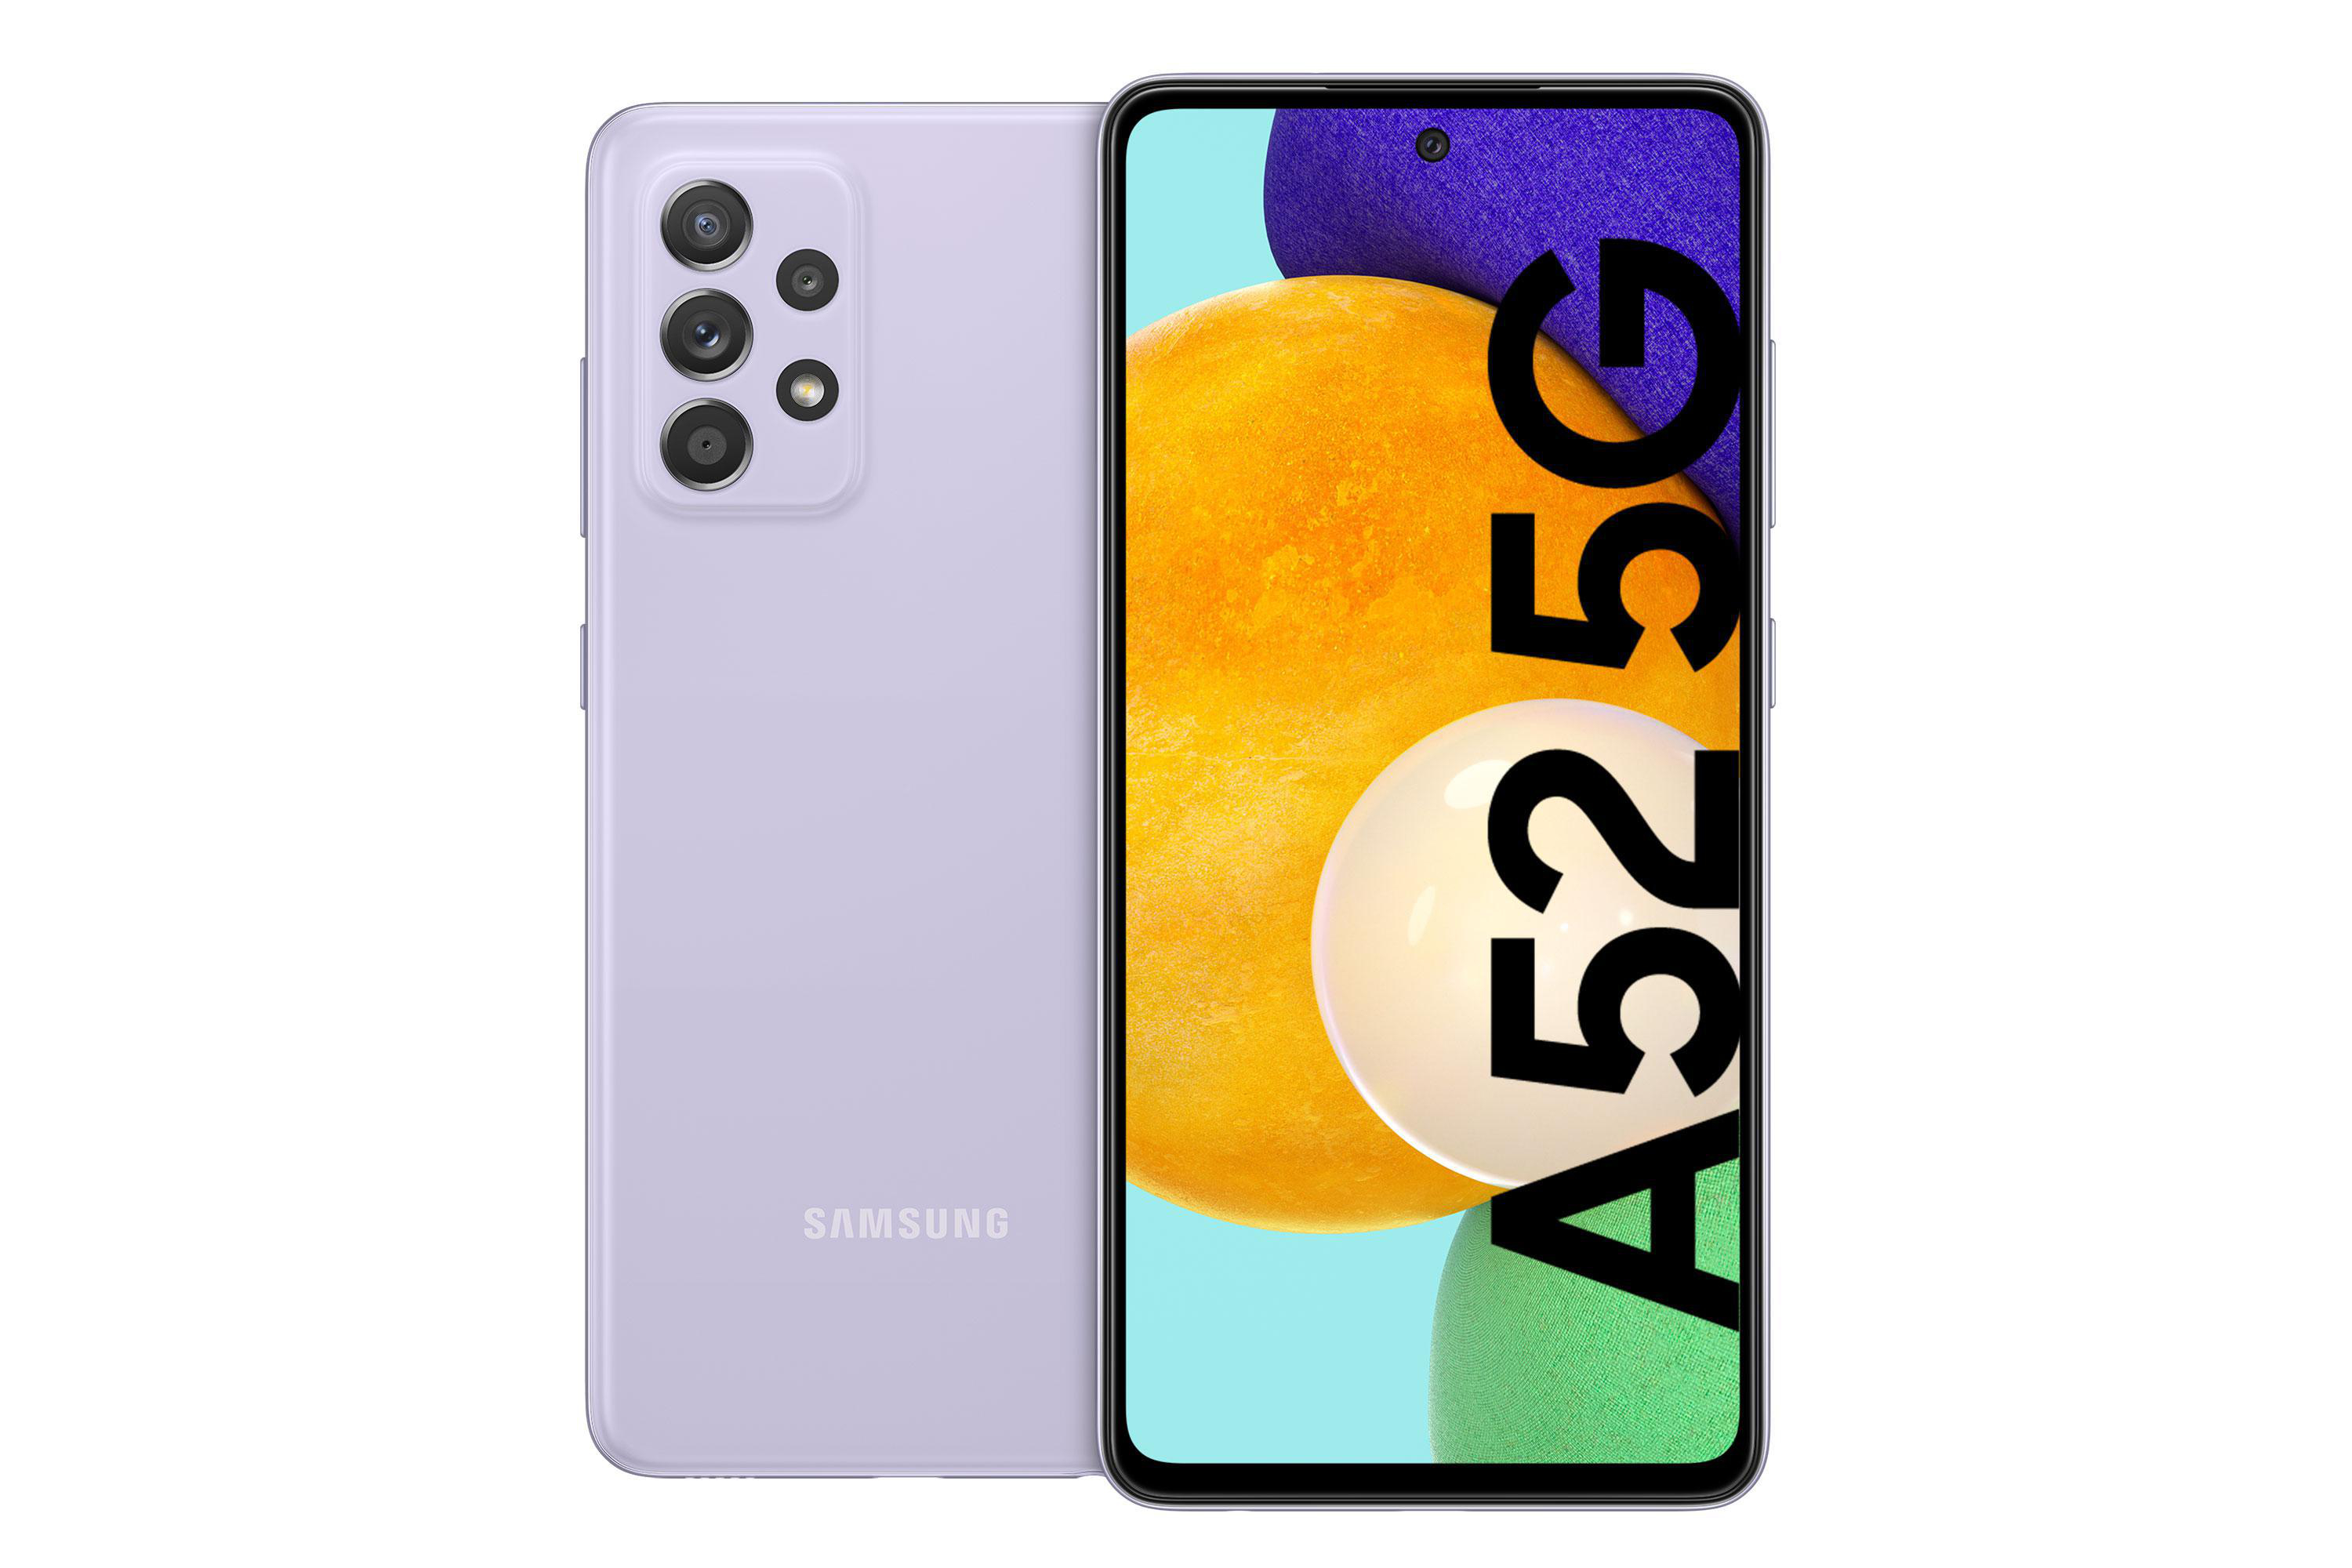 Galaxy SAMSUNG 256 GB Awesome Violet Dual SIM 5G A52